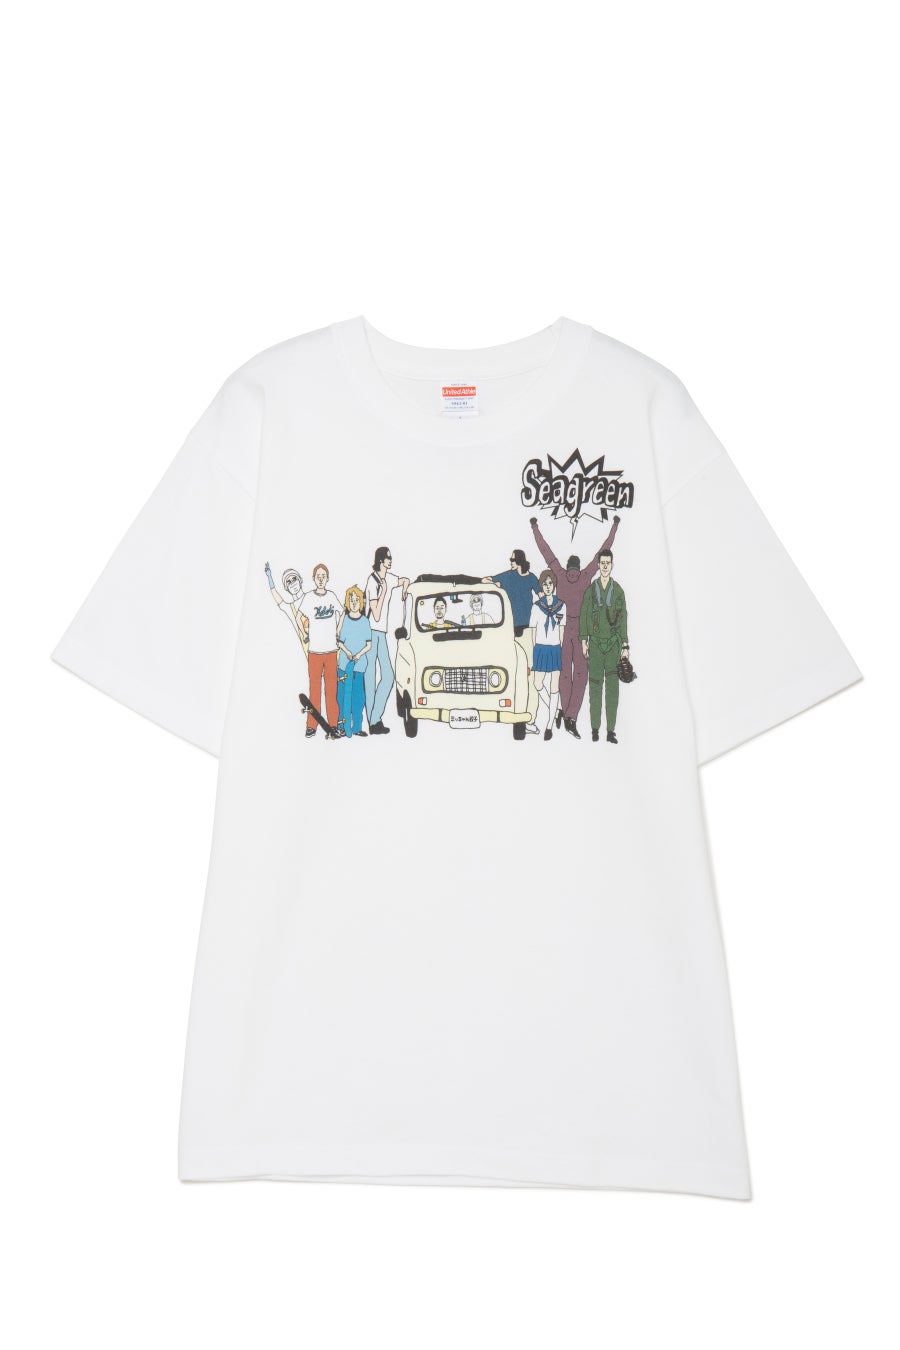 富山の大人気餃子店【ミッちゃん餃子】とSeagreenがコラボレーション2日間限定のPOP UPイベントを開催のサブ画像4_オリジナルグラフィックTシャツ ¥6,600